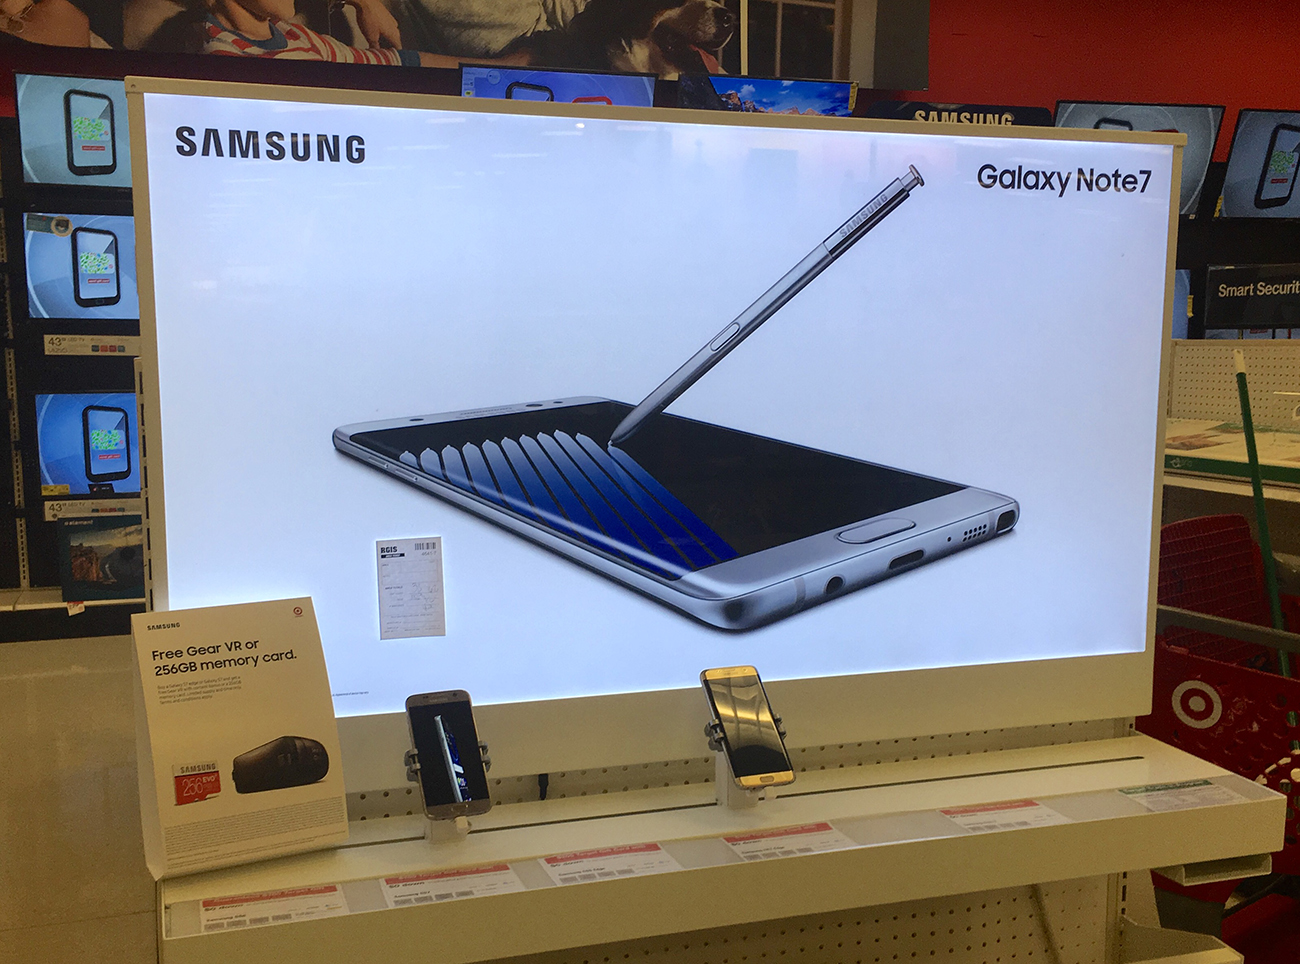 تُظهر الصورة شاشة كبيرة للهاتف الذكي Samsung Galaxy note، مع قلم لمس الشاشة.